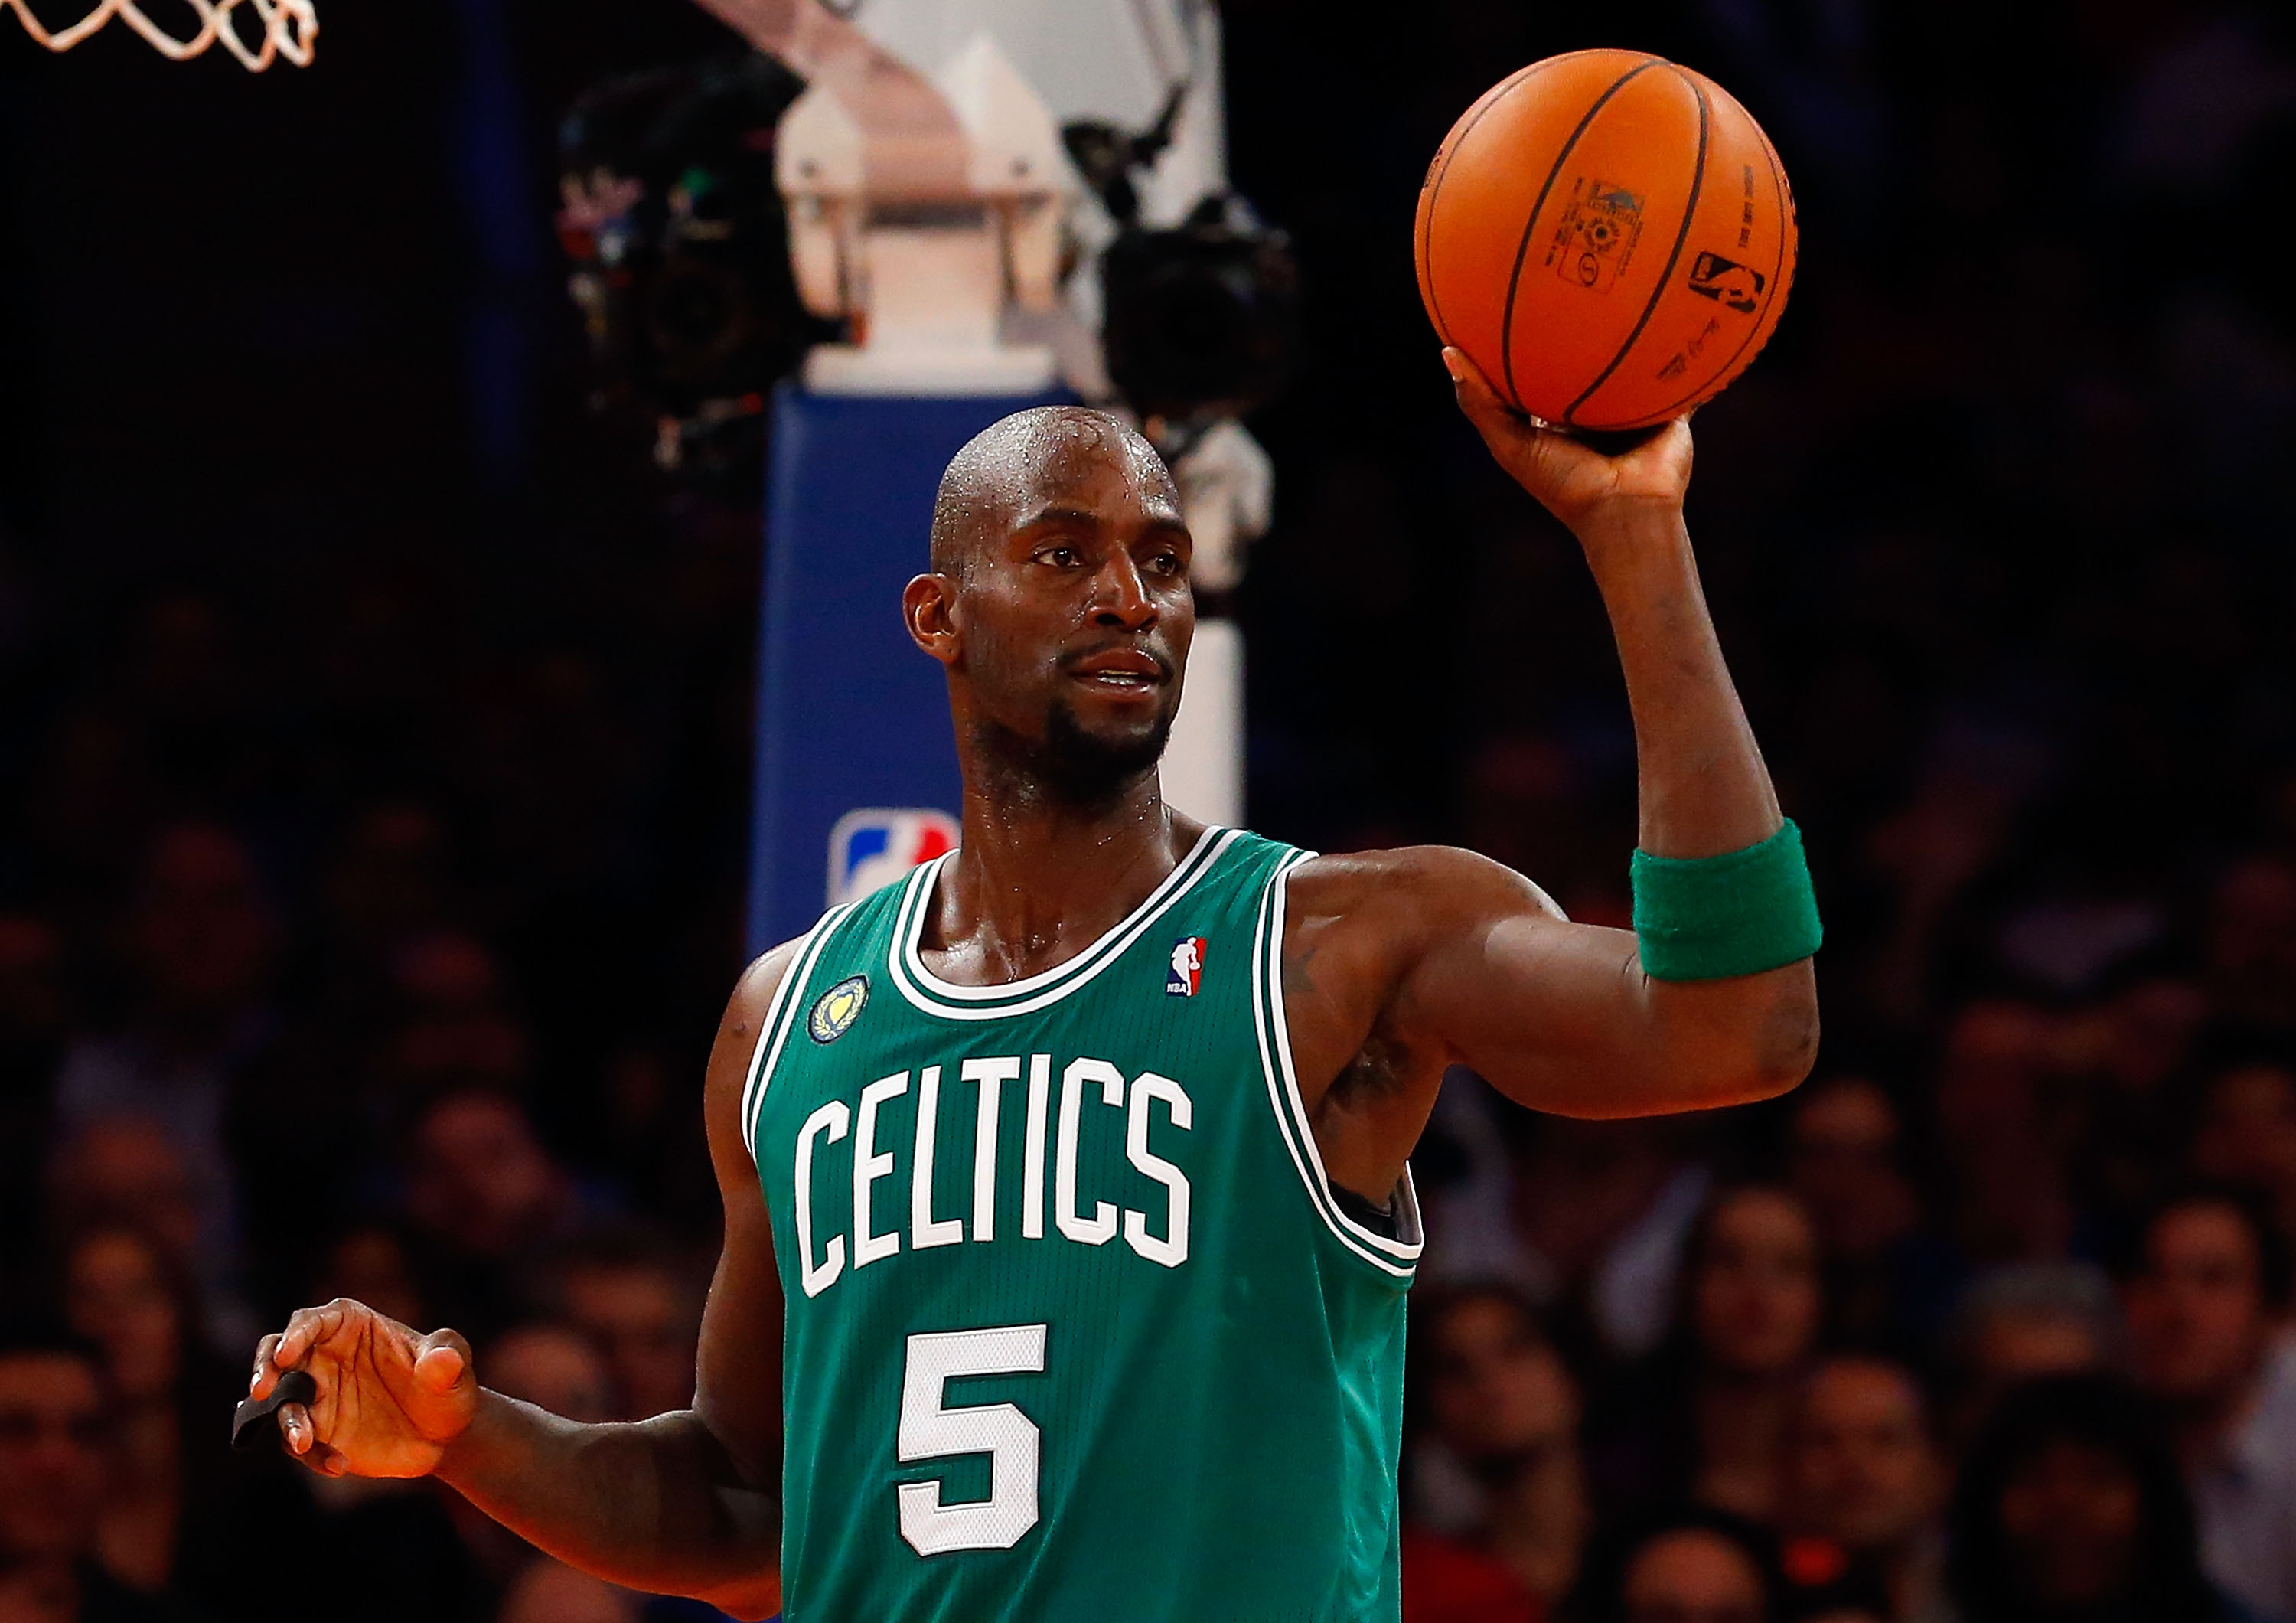 Kevin Garnett of the Boston Celtics in action against the New York Knicks.